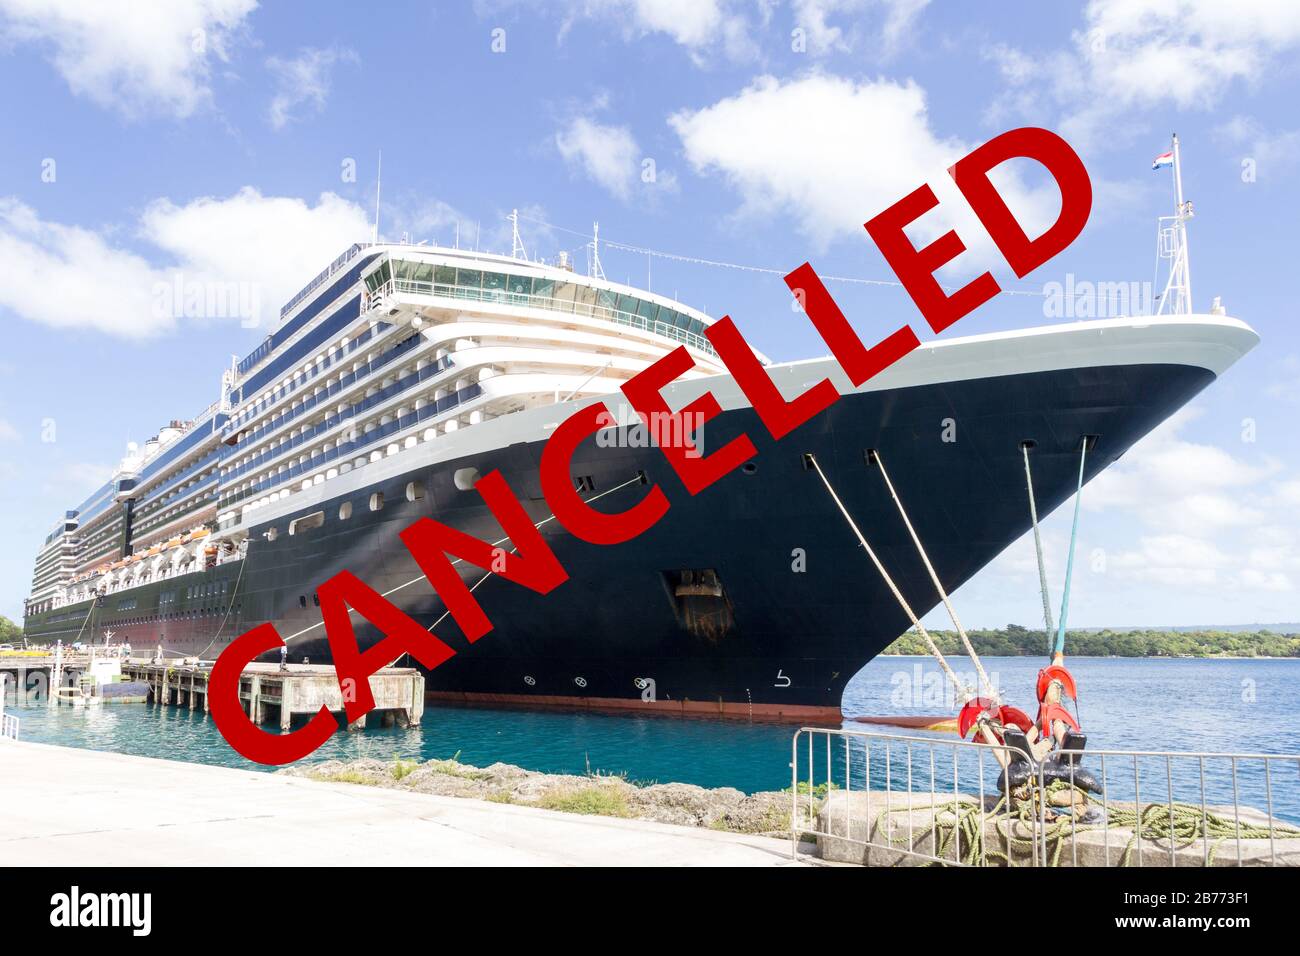 Un navire de croisière amarré dans le port se superpose avec un panneau stop indiquant appelé en raison du virus corona ou de la pandémie de covid-19 Banque D'Images